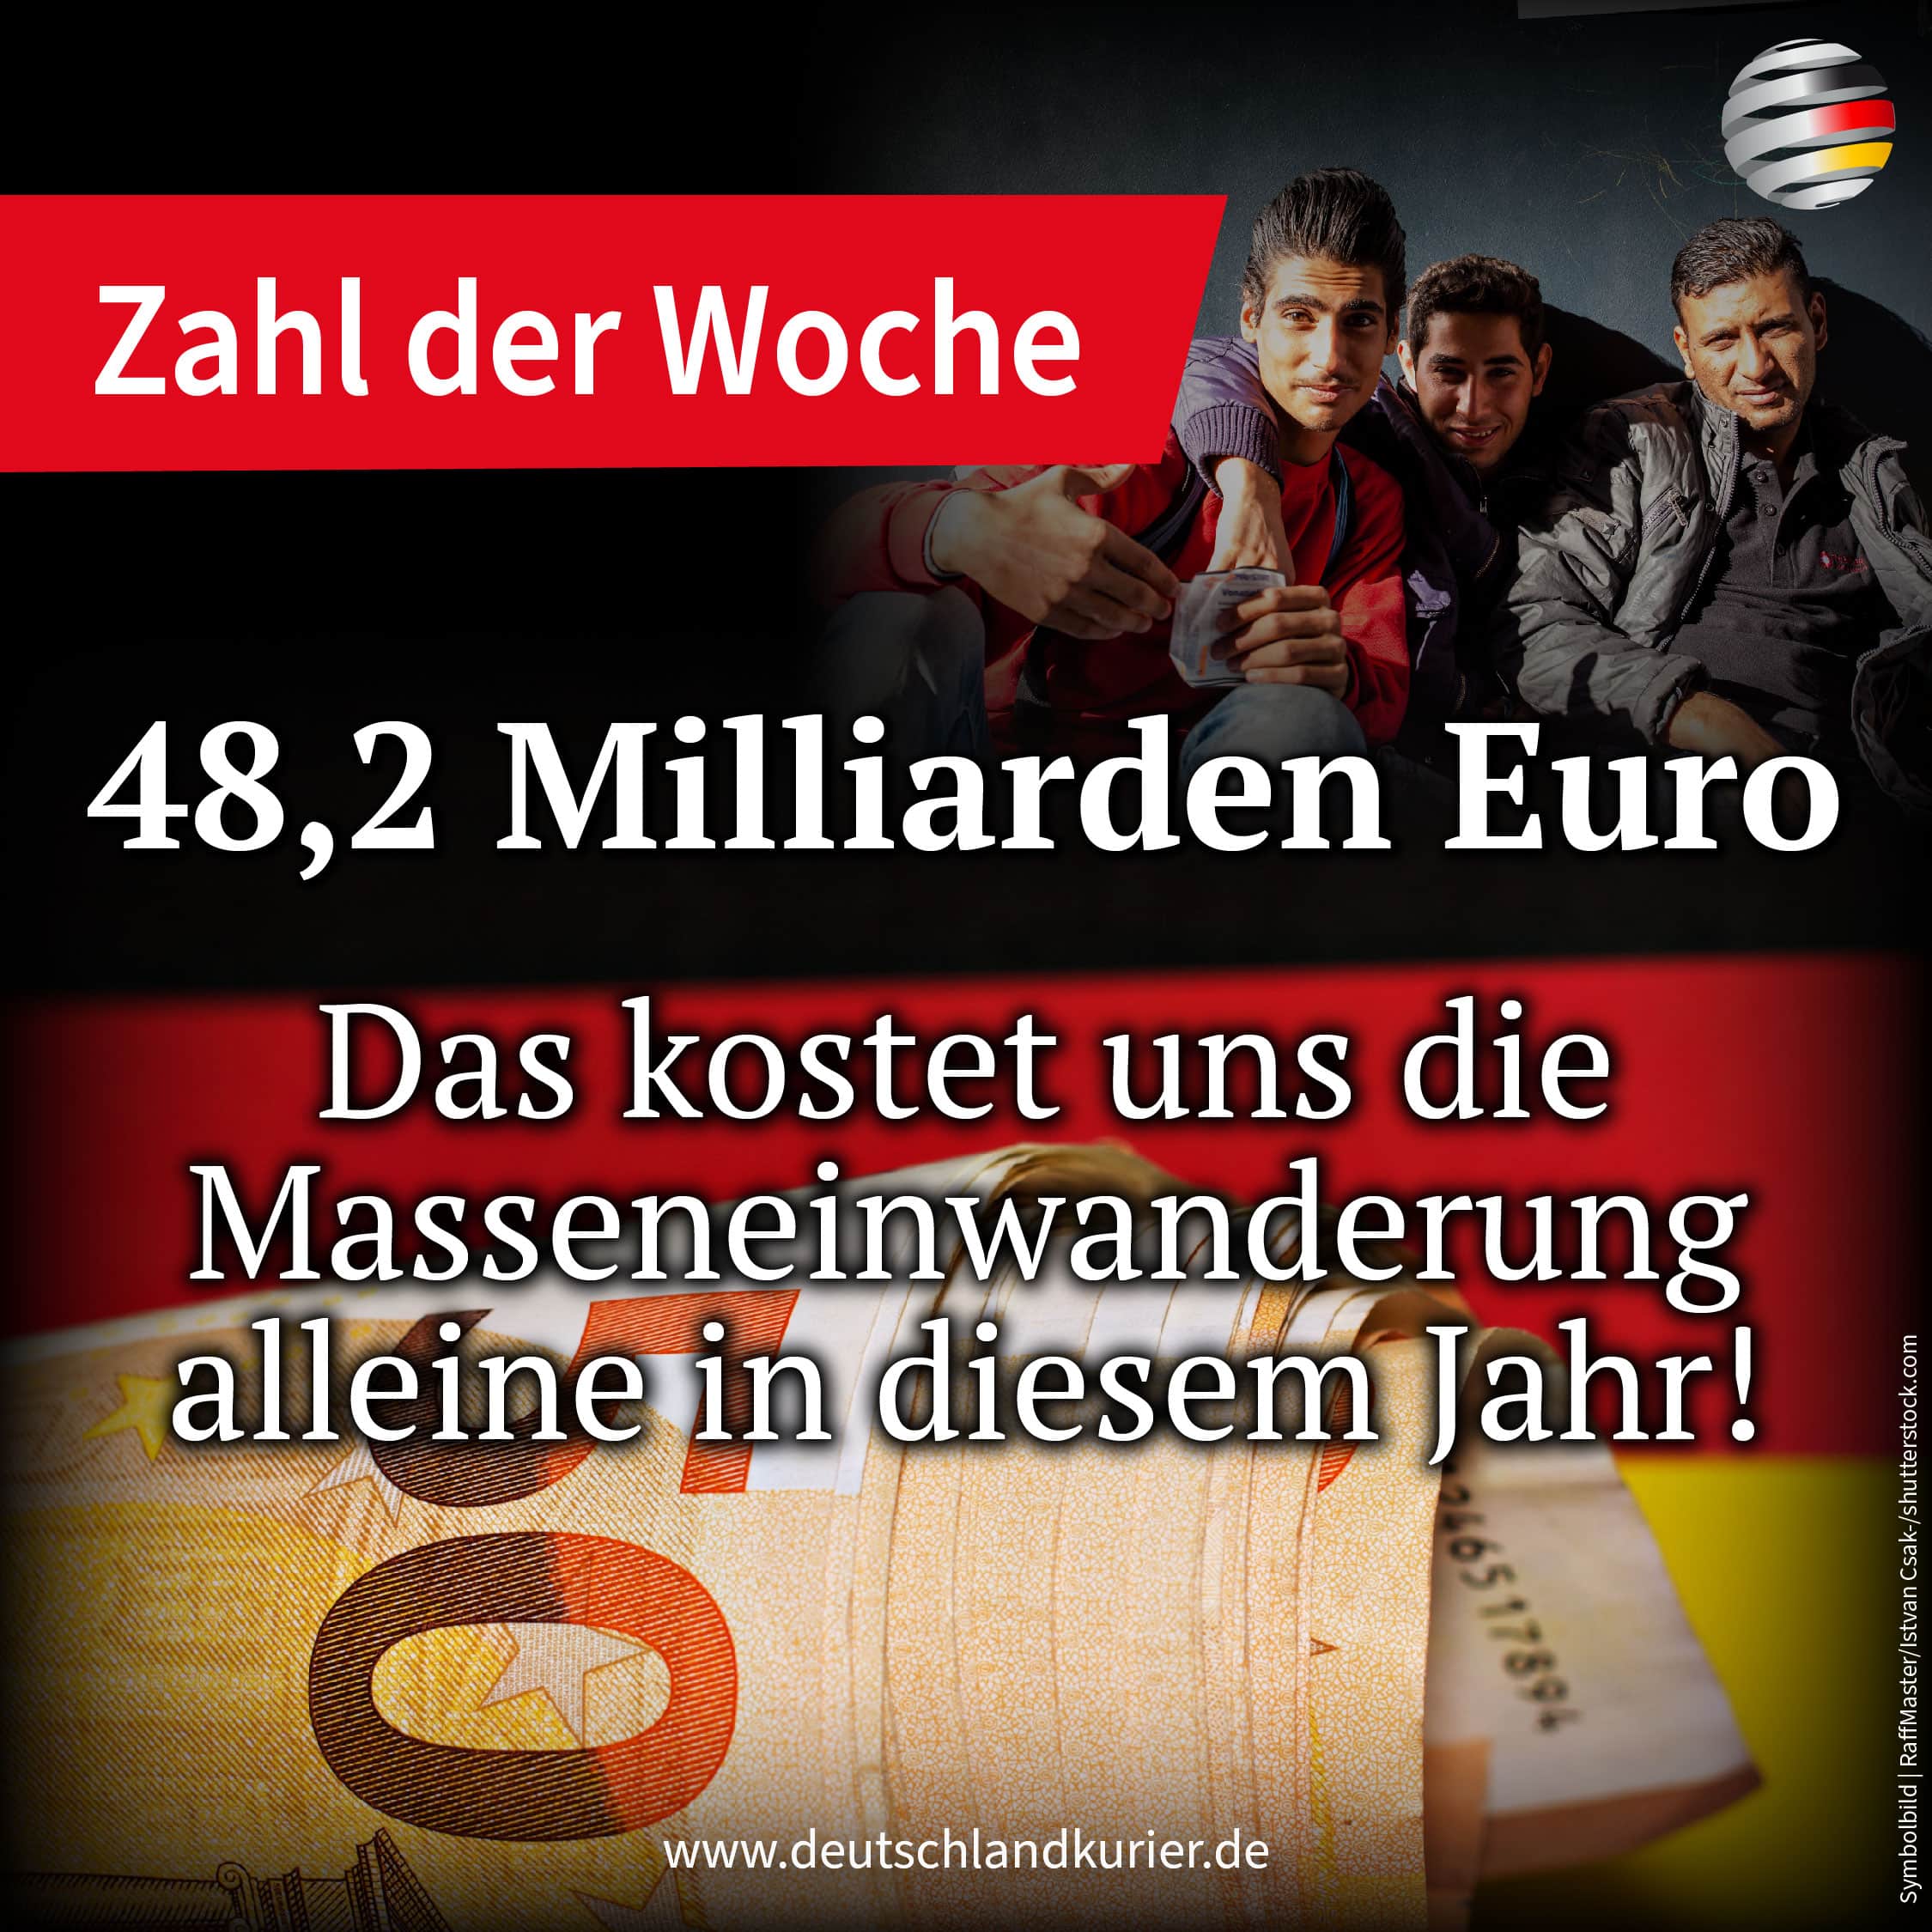 48,2-milliarden-euro-–-die-masseneinwanderung-verursacht-uns-allein-in-diesem-jahr-diese-kosten!